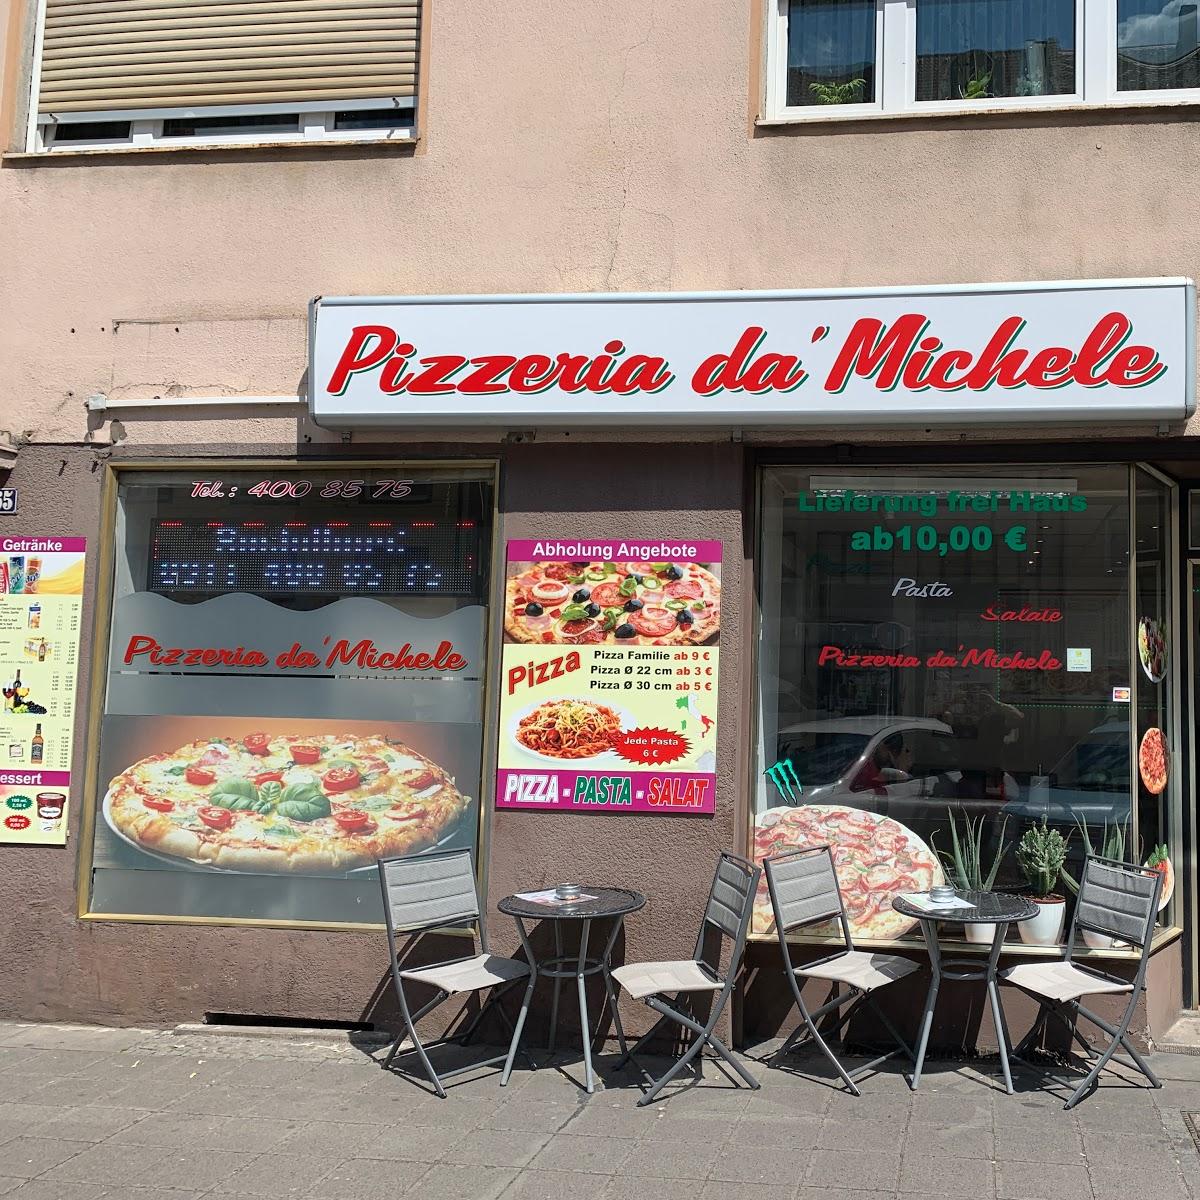 Restaurant "Pizza Da Michele" in Nürnberg